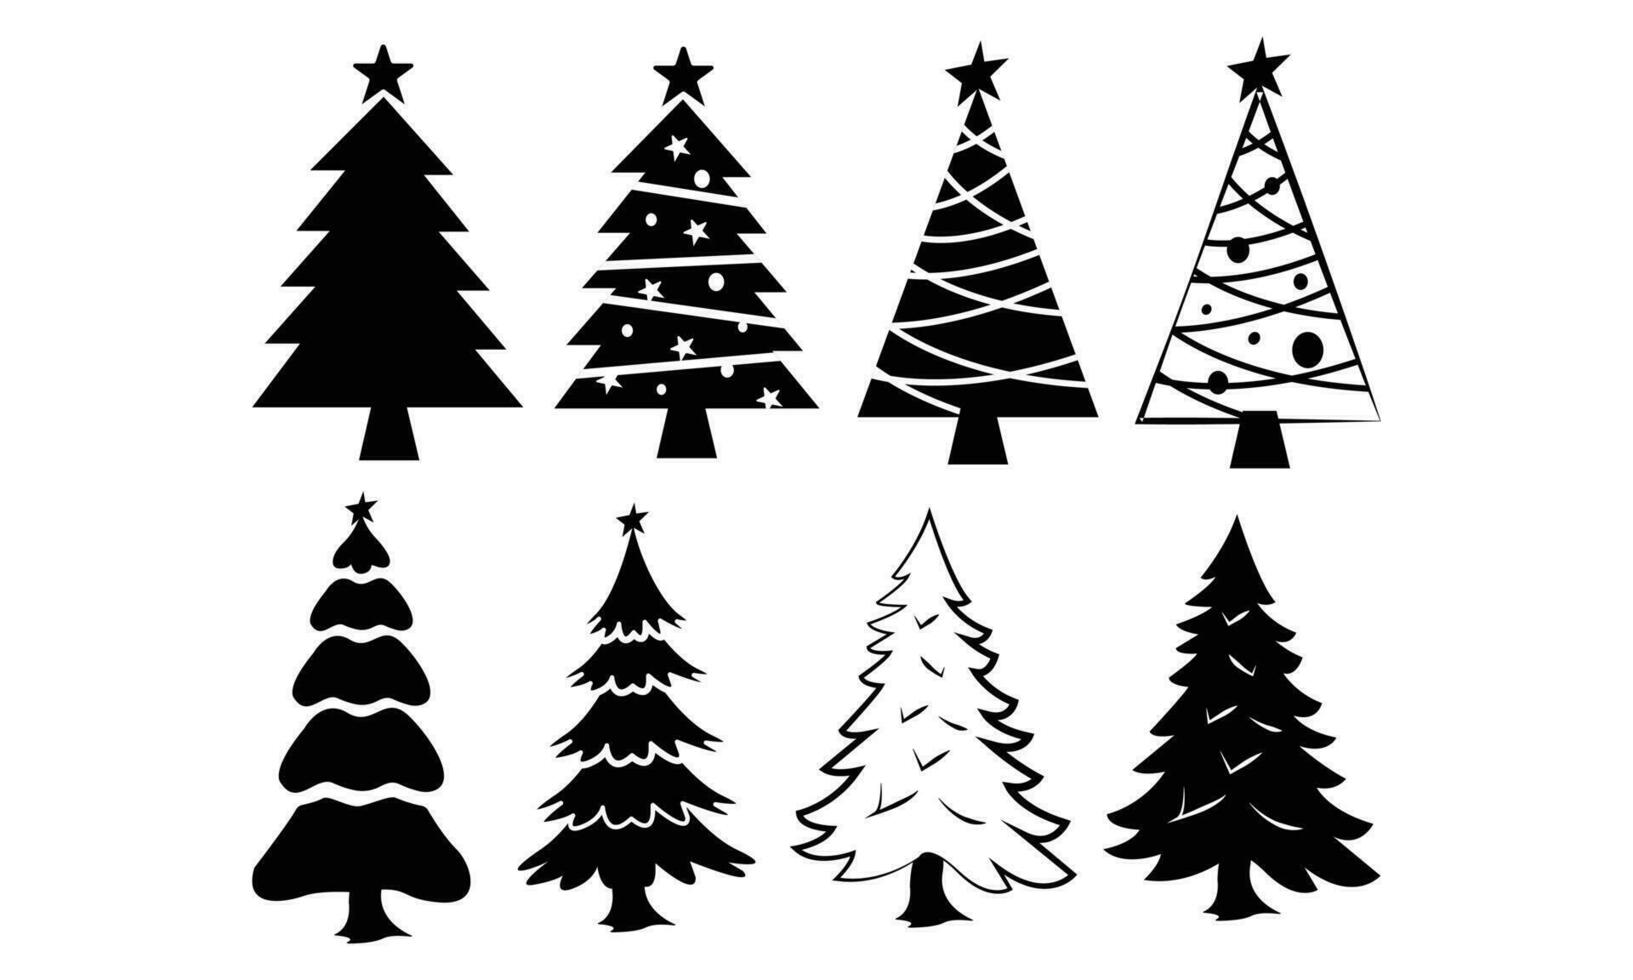 Navidad árbol, Navidad árbol creativo niños nieve papel, Navidad tema vector ilustración.